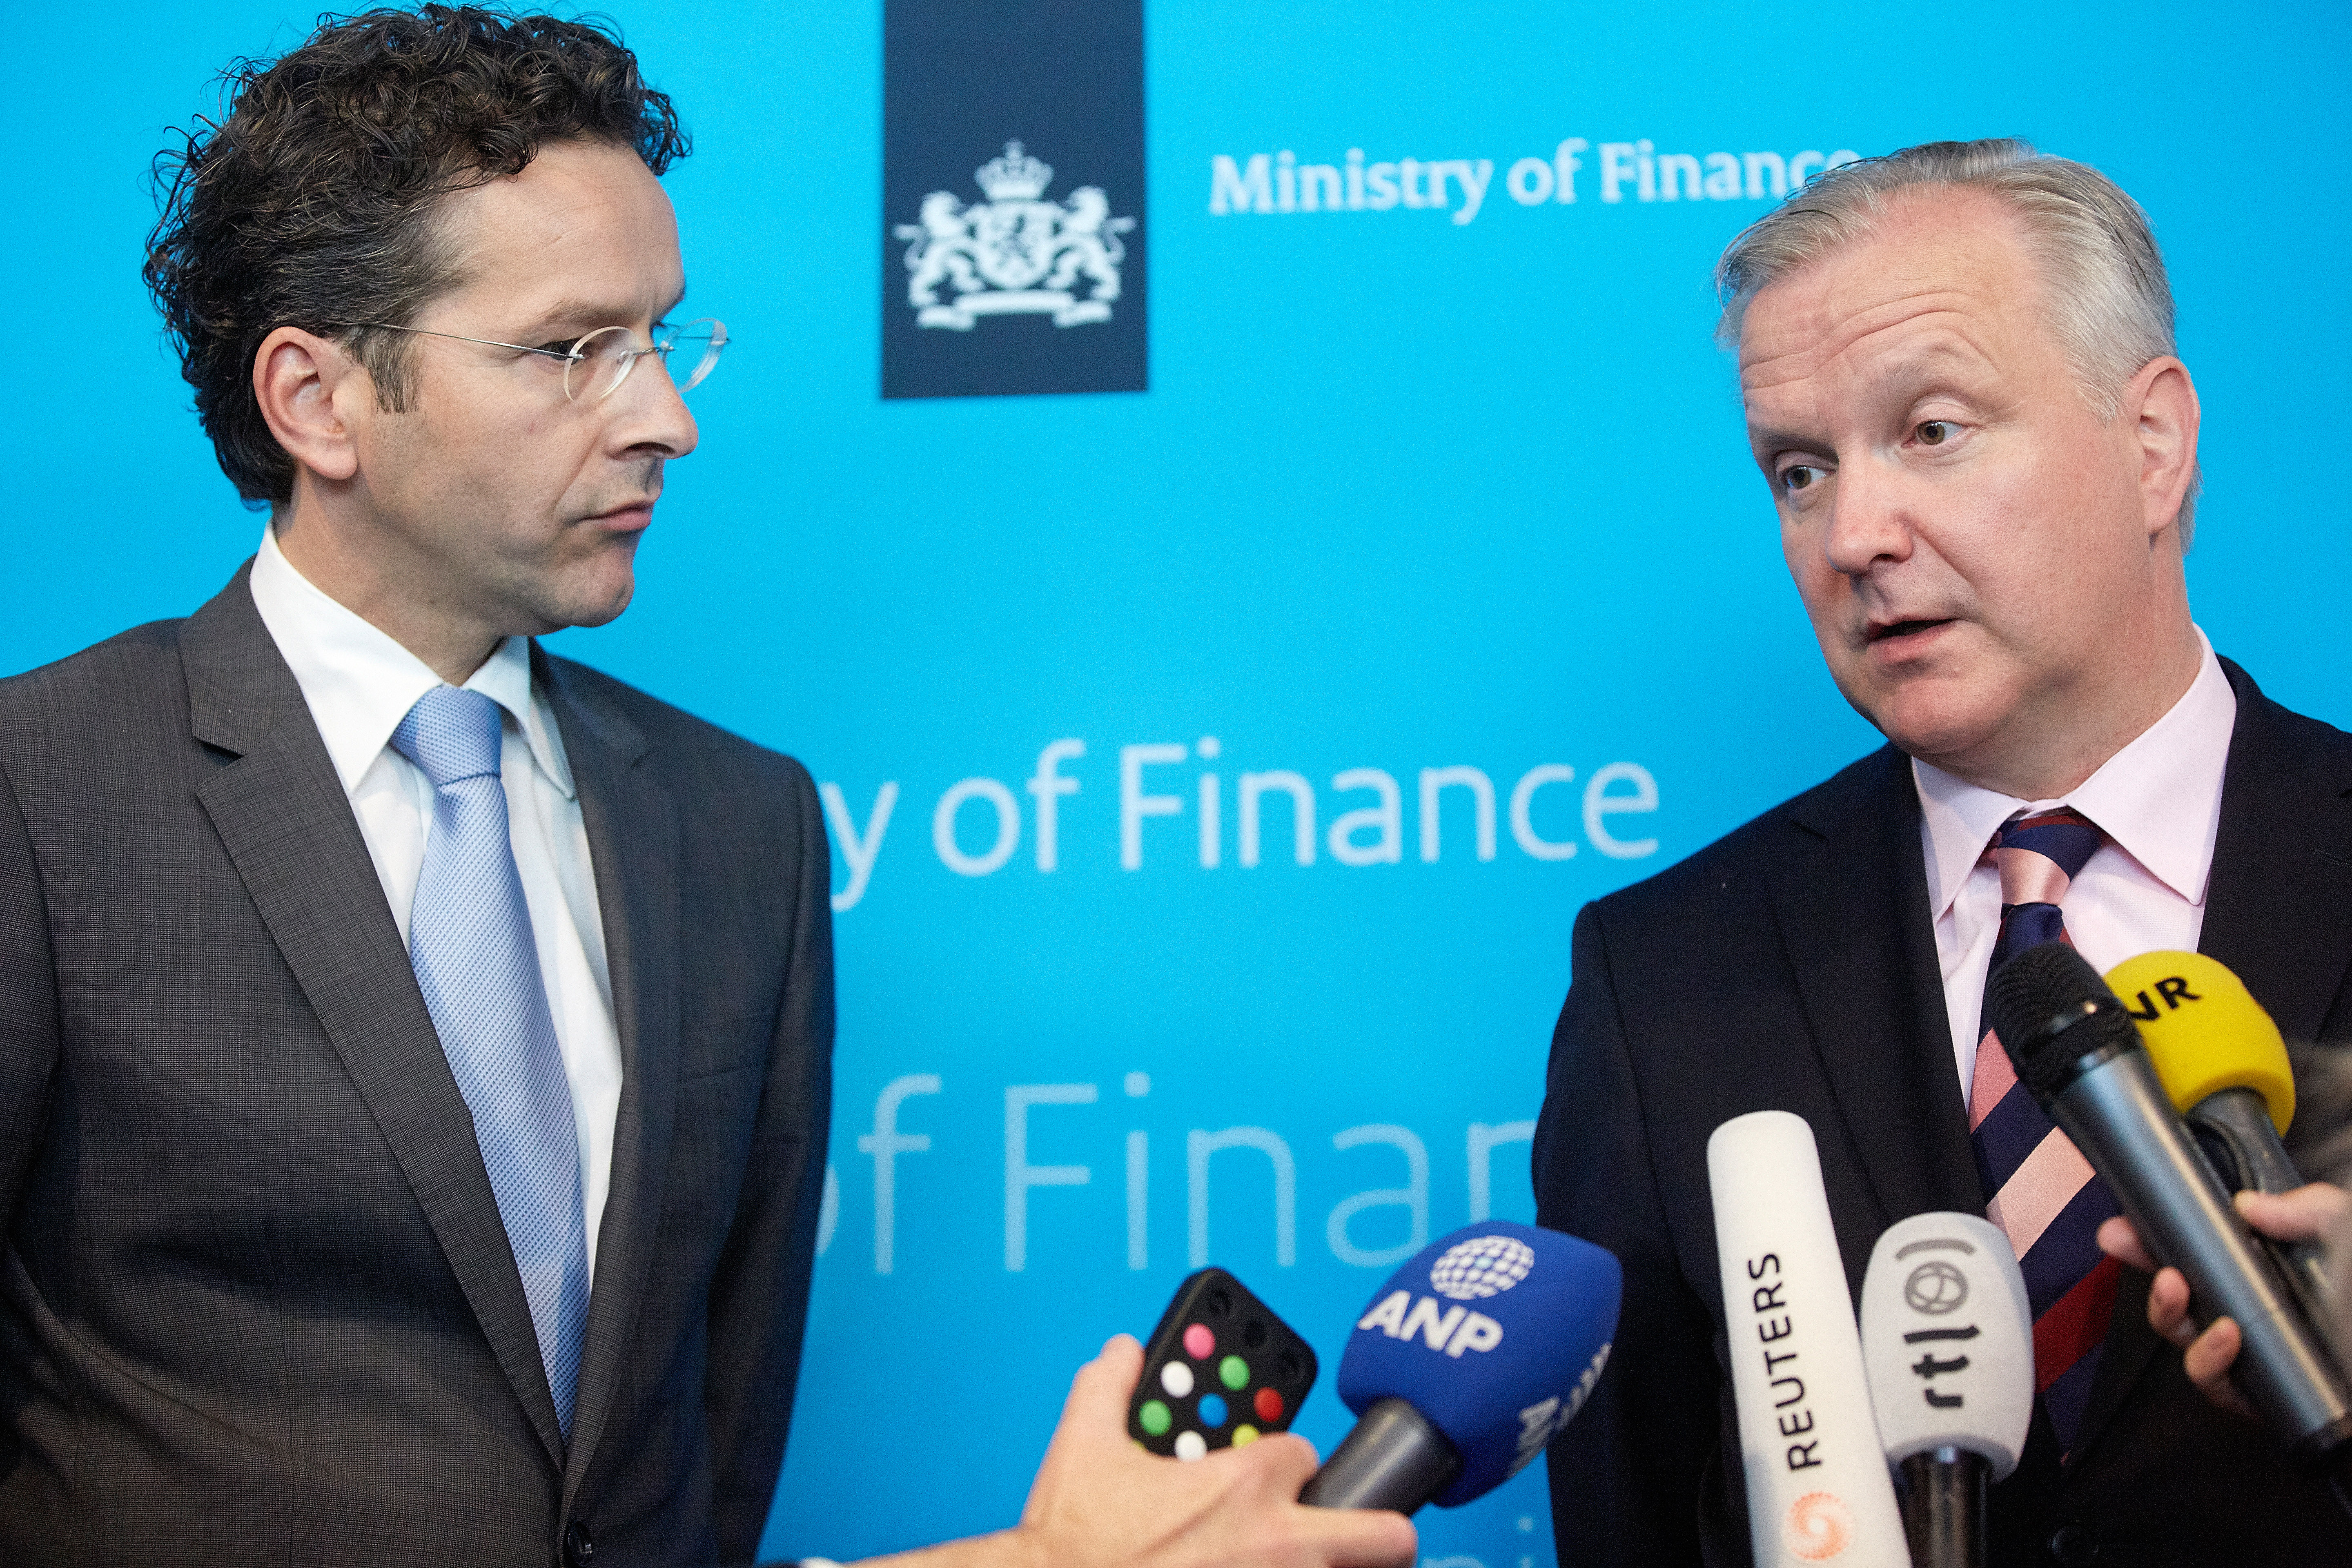 Nederland kan mogelijk meer tijd krijgen om het begrotingstekort onder de 3 procent te krijgen als de economische groei tegenvalt. Eurocommissaris Olli Rehn zei dat dinsdag na een gesprek met minister Jeroen Dijsselbloem van Financiën. ,,Als de groei verslechtert heeft dat ook een impact op het begrotingstekort. Dan is het volgens het begrotingspact mogelijk om een verlenging van de deadline te overwegen, op voorwaarde dat de structurele hervormingen worden uitgevoerd'', zei Rehn. Rehn had Nederland eerder aangeraden om een veiligheidsmarge aan te houden en het overheidstekort volgend jaar naar 2,8 procent te brengen, waar 3 procent de afspraak is in het Europese begrotingspact.